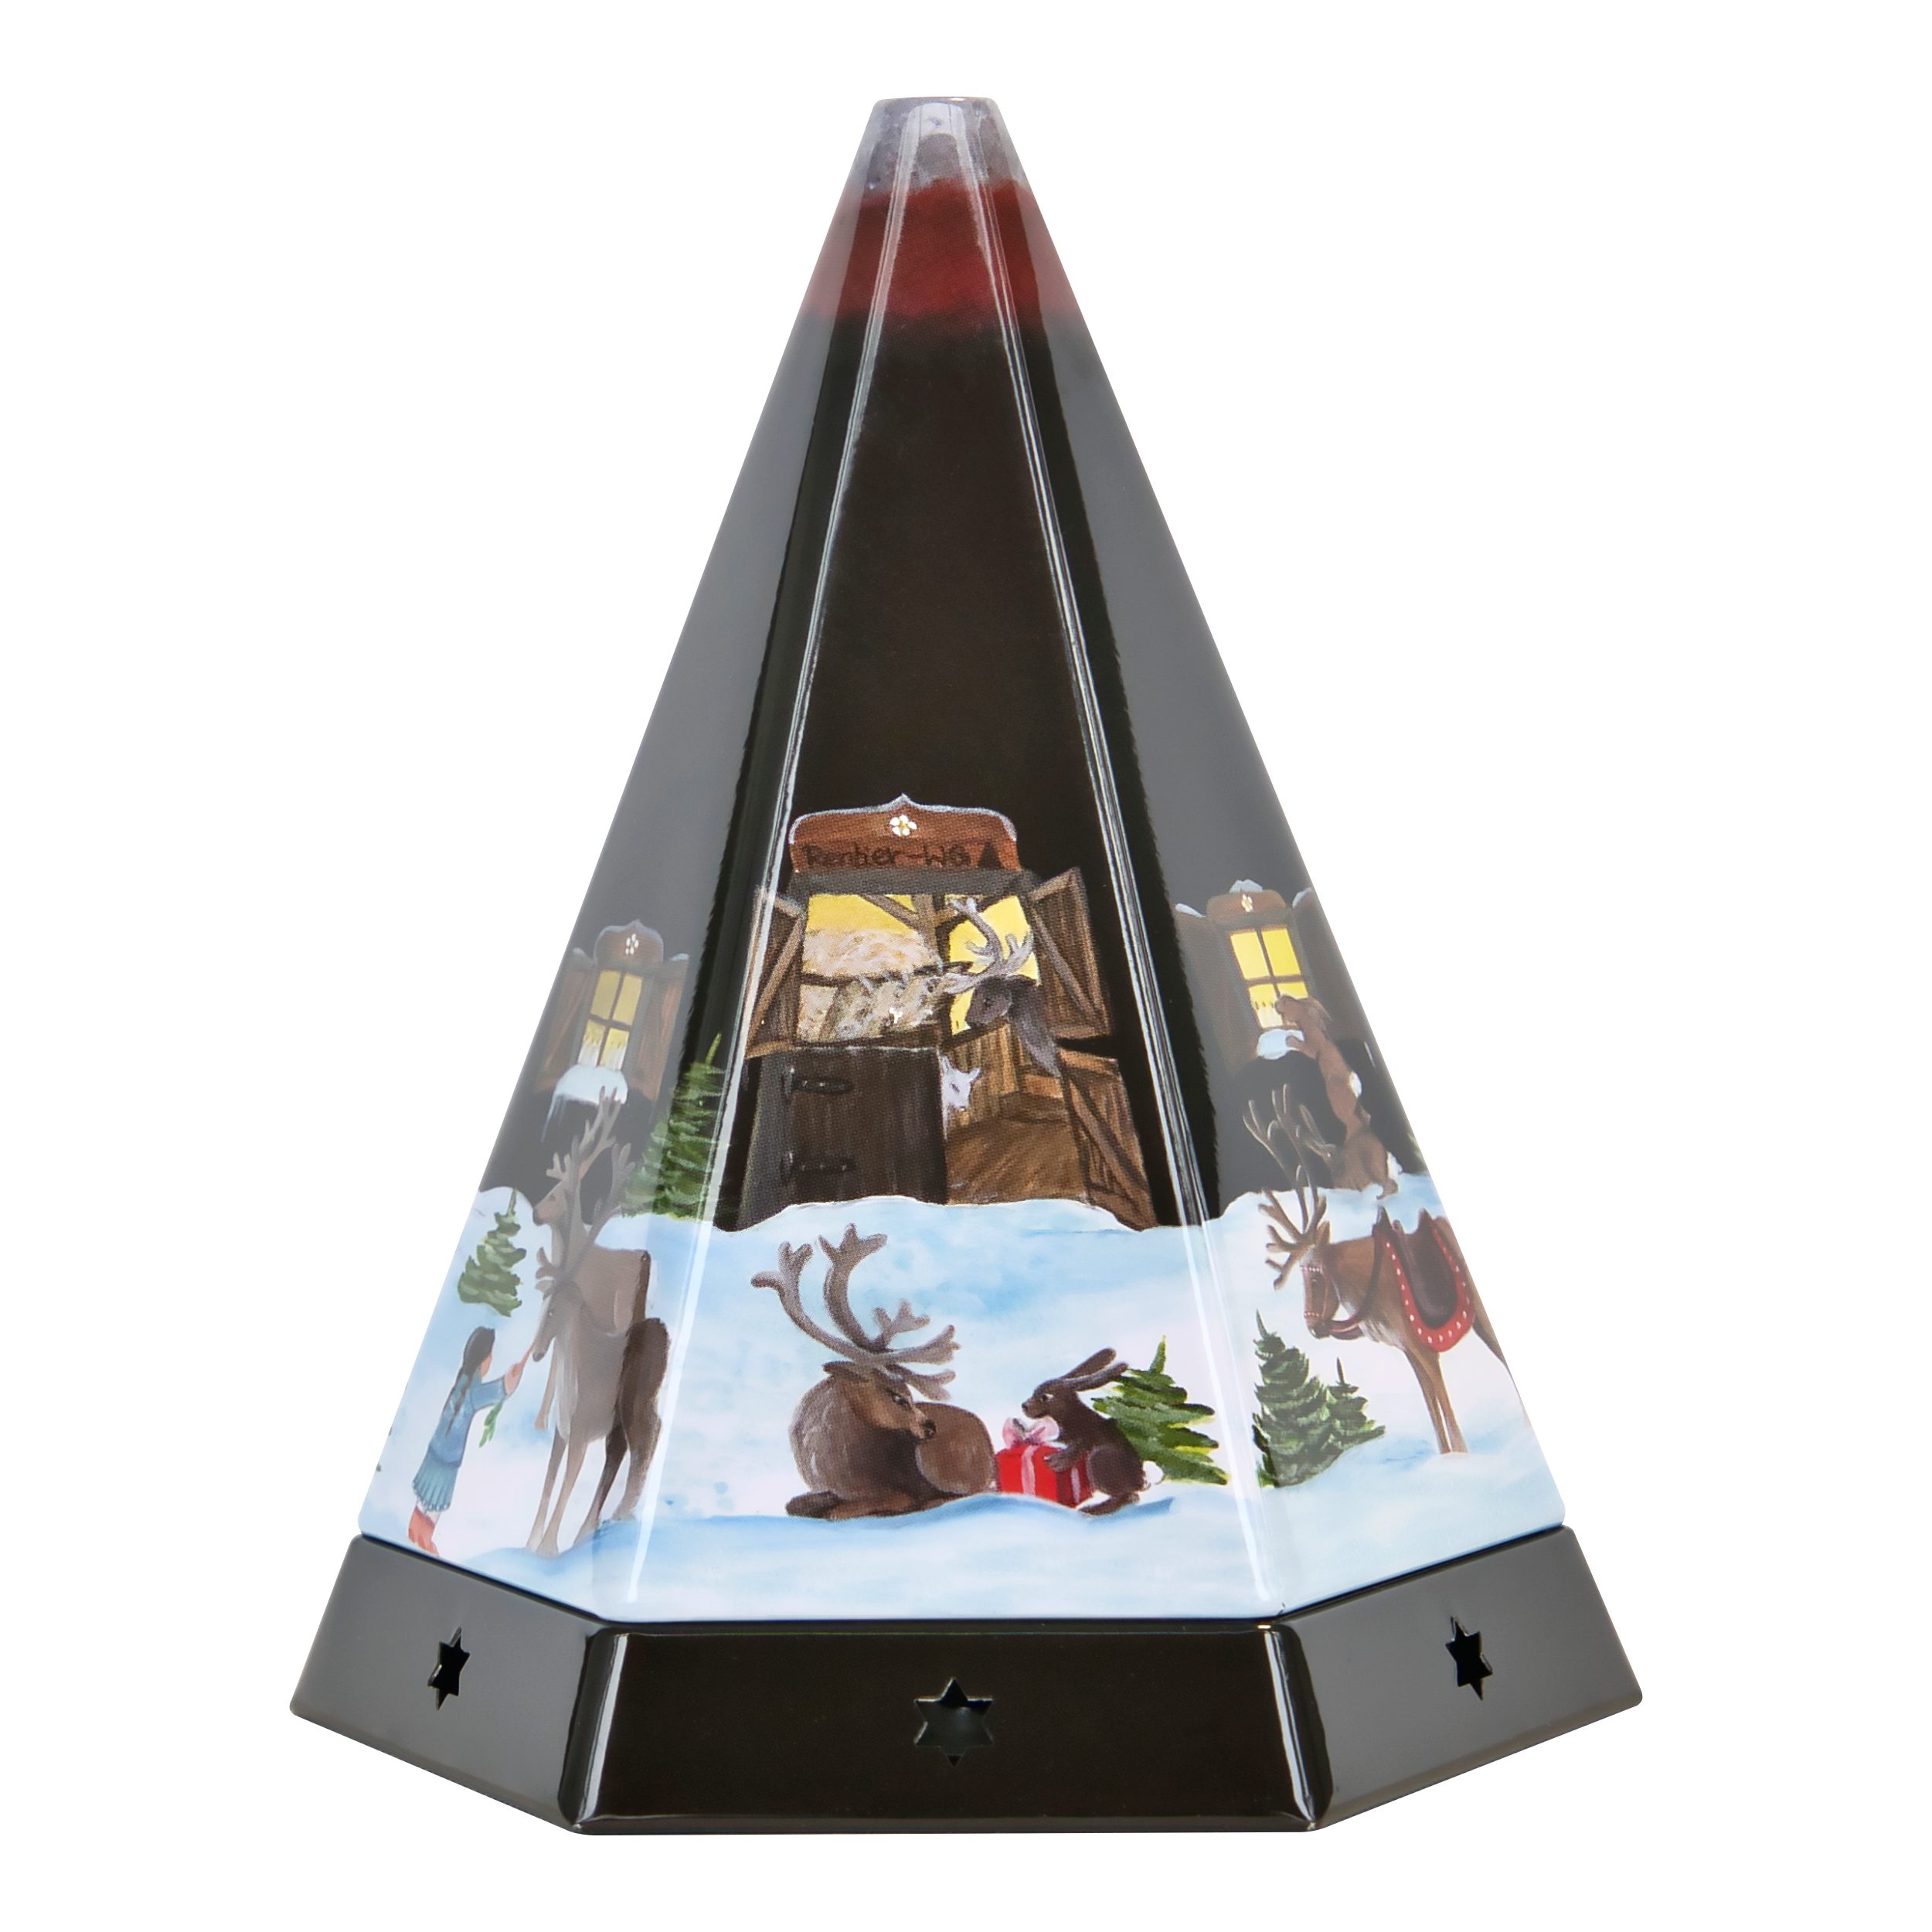 Crottendorfer Räucherhaus Räucherpyramide aus Metall - mit Räucherkerzenhalter, mit schöner winterlicher Verzierung außen - Made in Germany